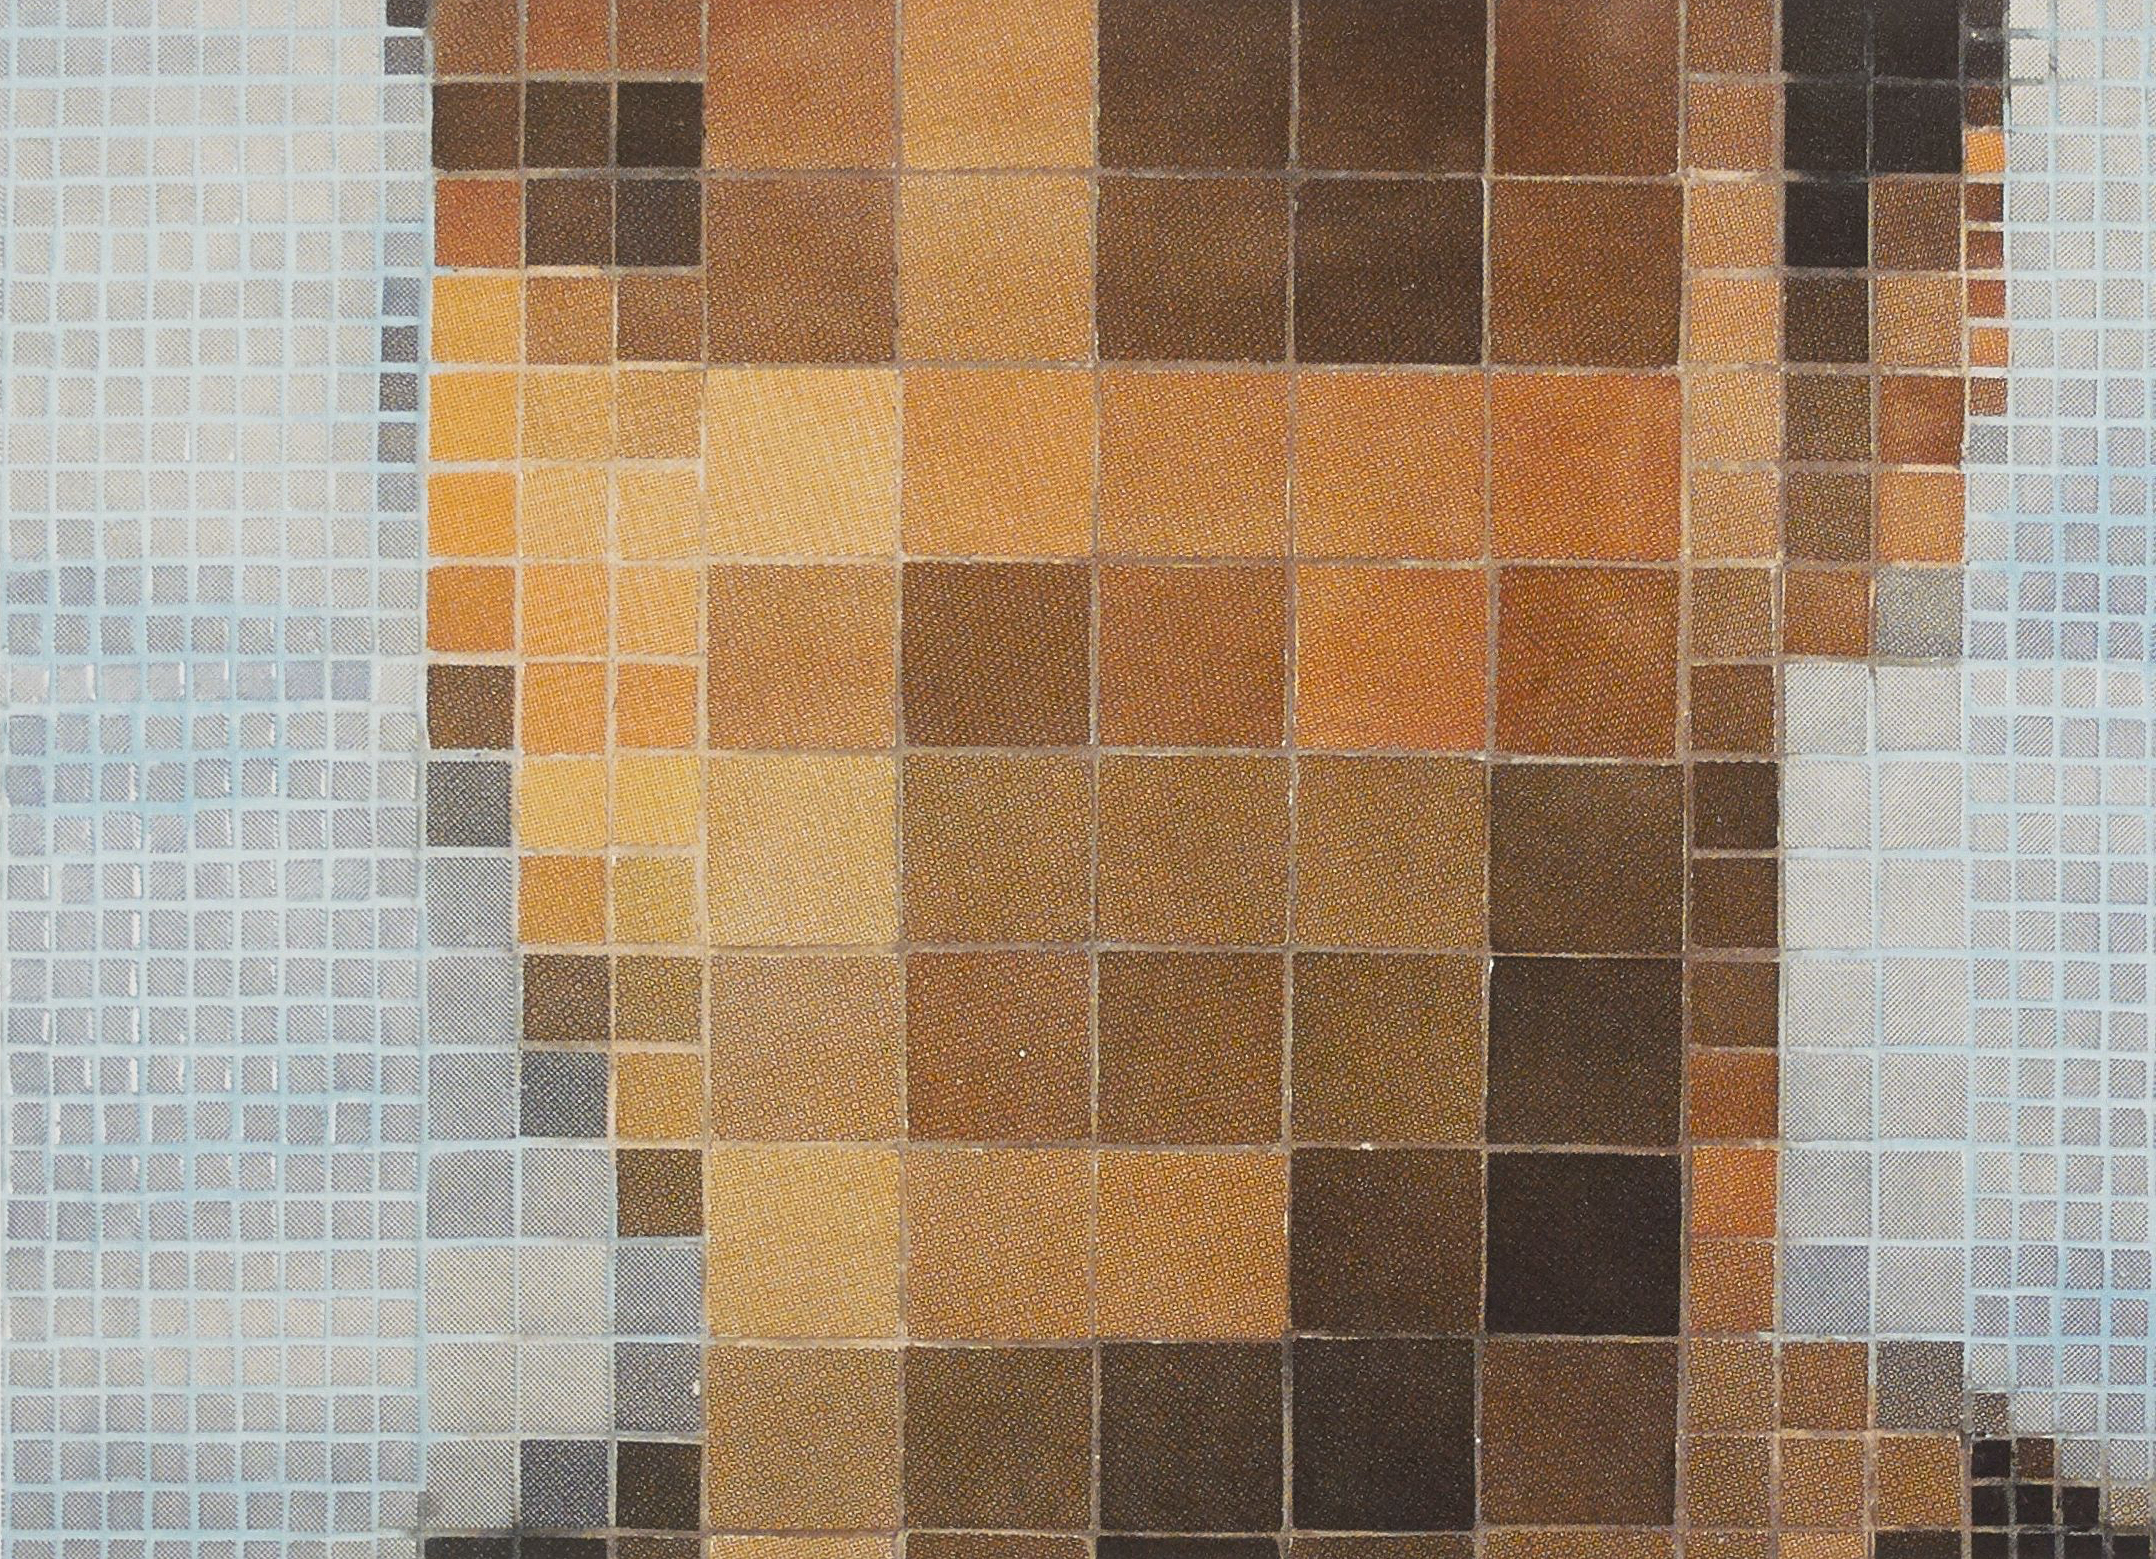 J3240,2007- Screen-printed ceramic tiles. 21x31 in